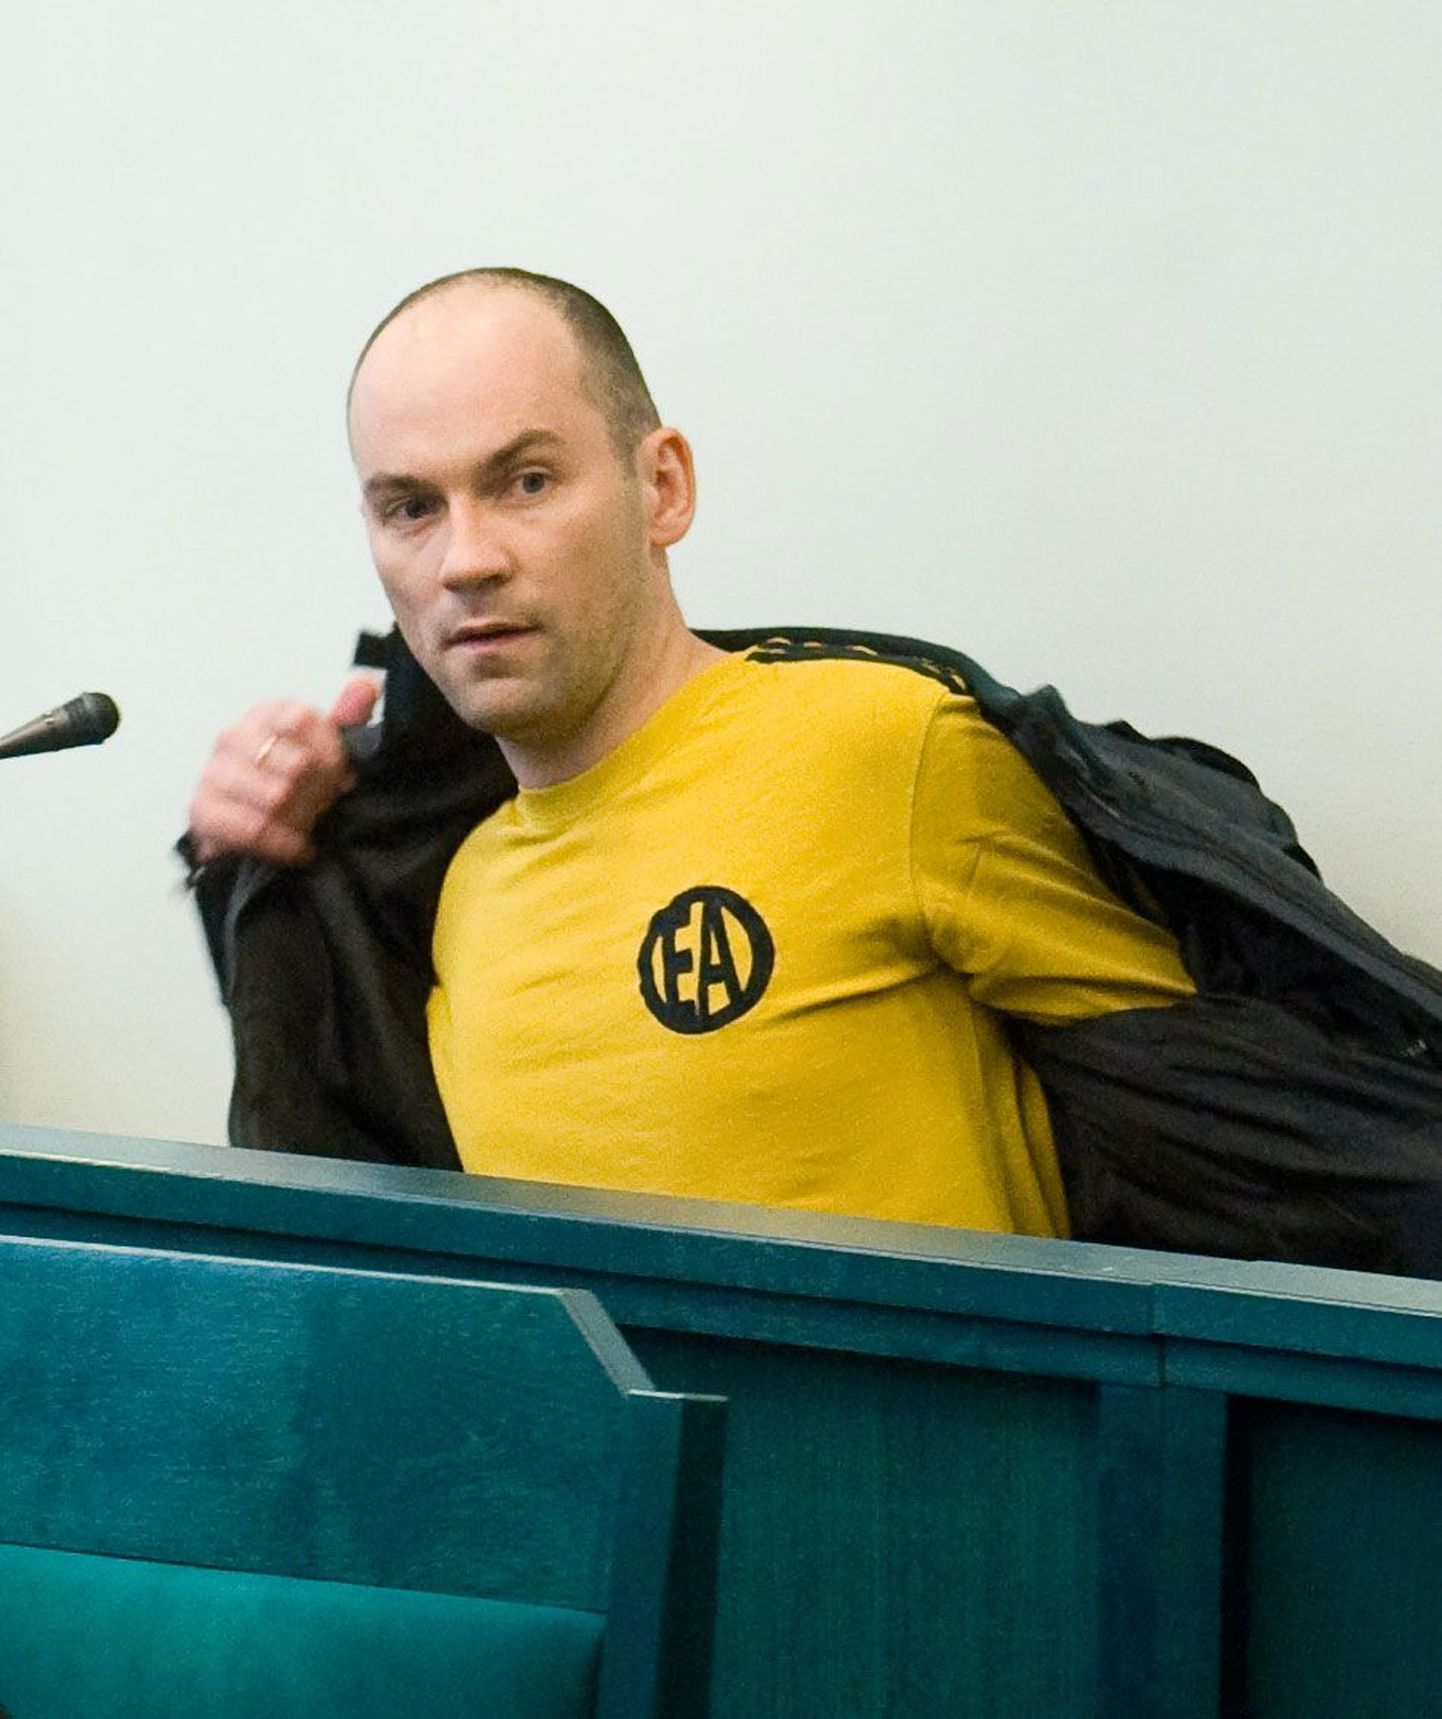 Kaitsepolitseiameti endine tippuurija Indrek Põder tunnistas end 26. aprillil Harju maakohtus süüdi ja sai kokkuleppemenetluse korras karistuseks nelja-aastase vangistuse.